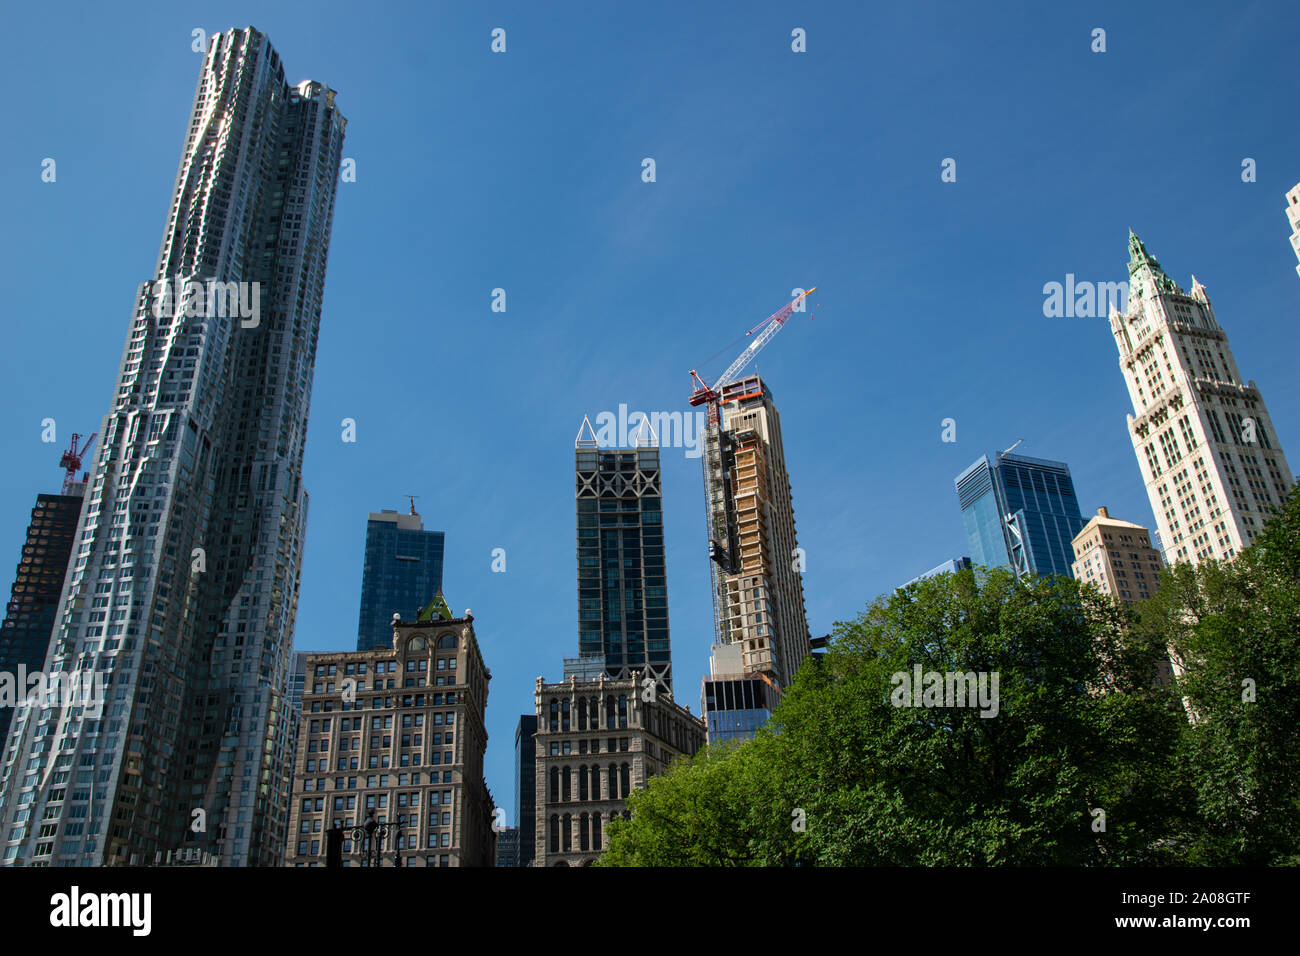 Ganz rechts ist das Woolworth Building zu sehen, ganz links das Gehry Gebäude. Un einem Haus in der Mitte wird noch gebaut. Foto Stock